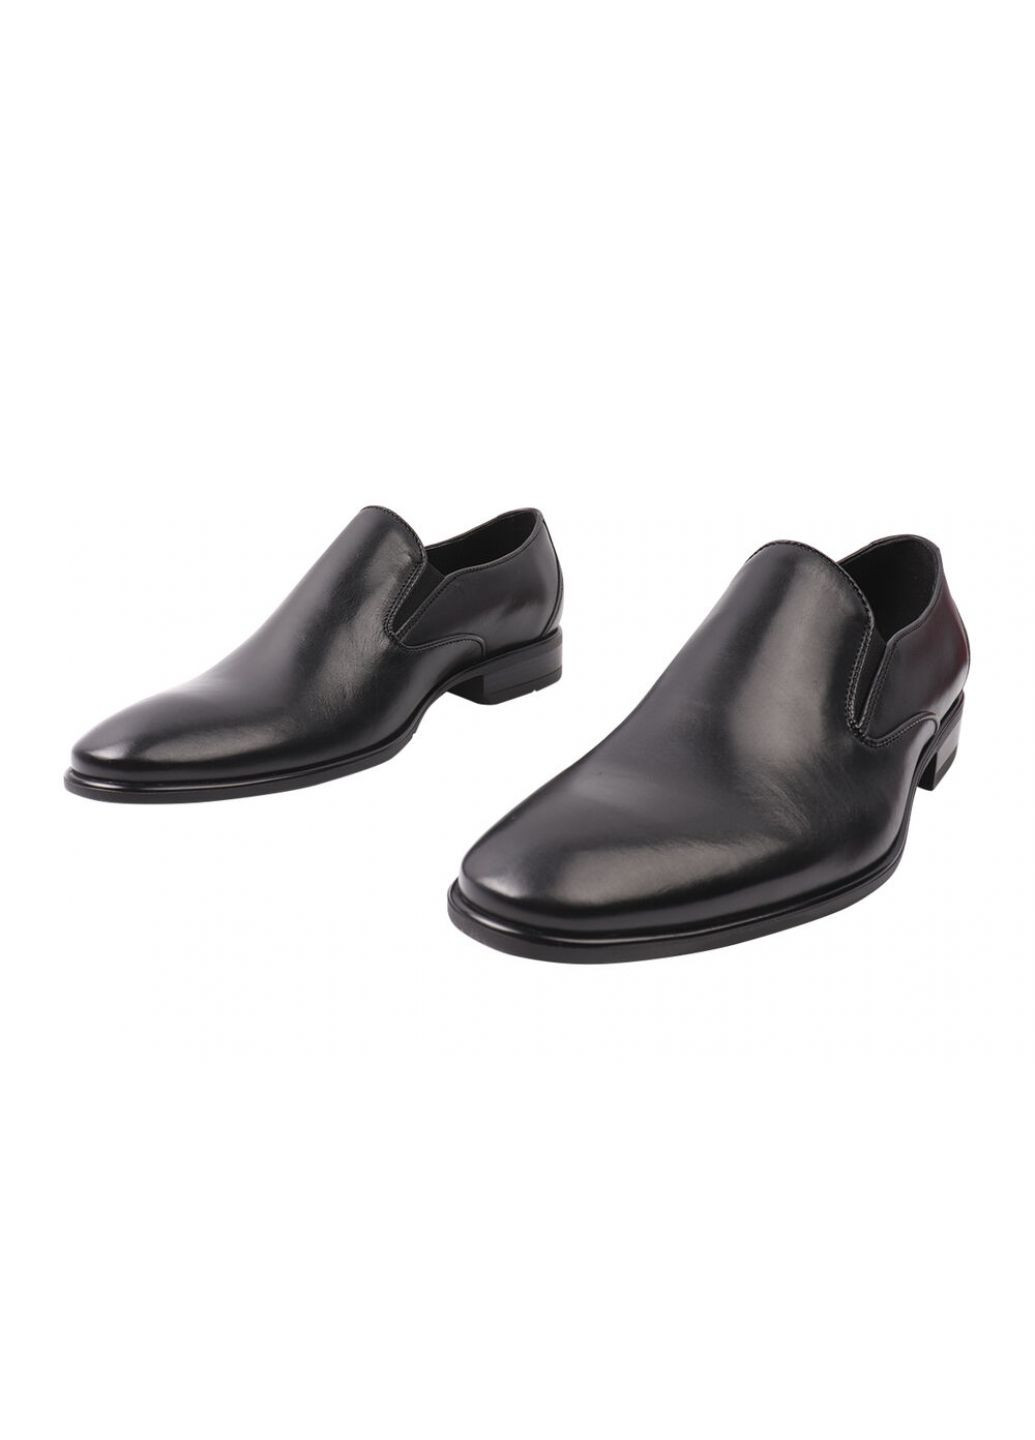 Черные туфли мужские из натуральной кожи, на низком ходу, черные, Fabio Conti